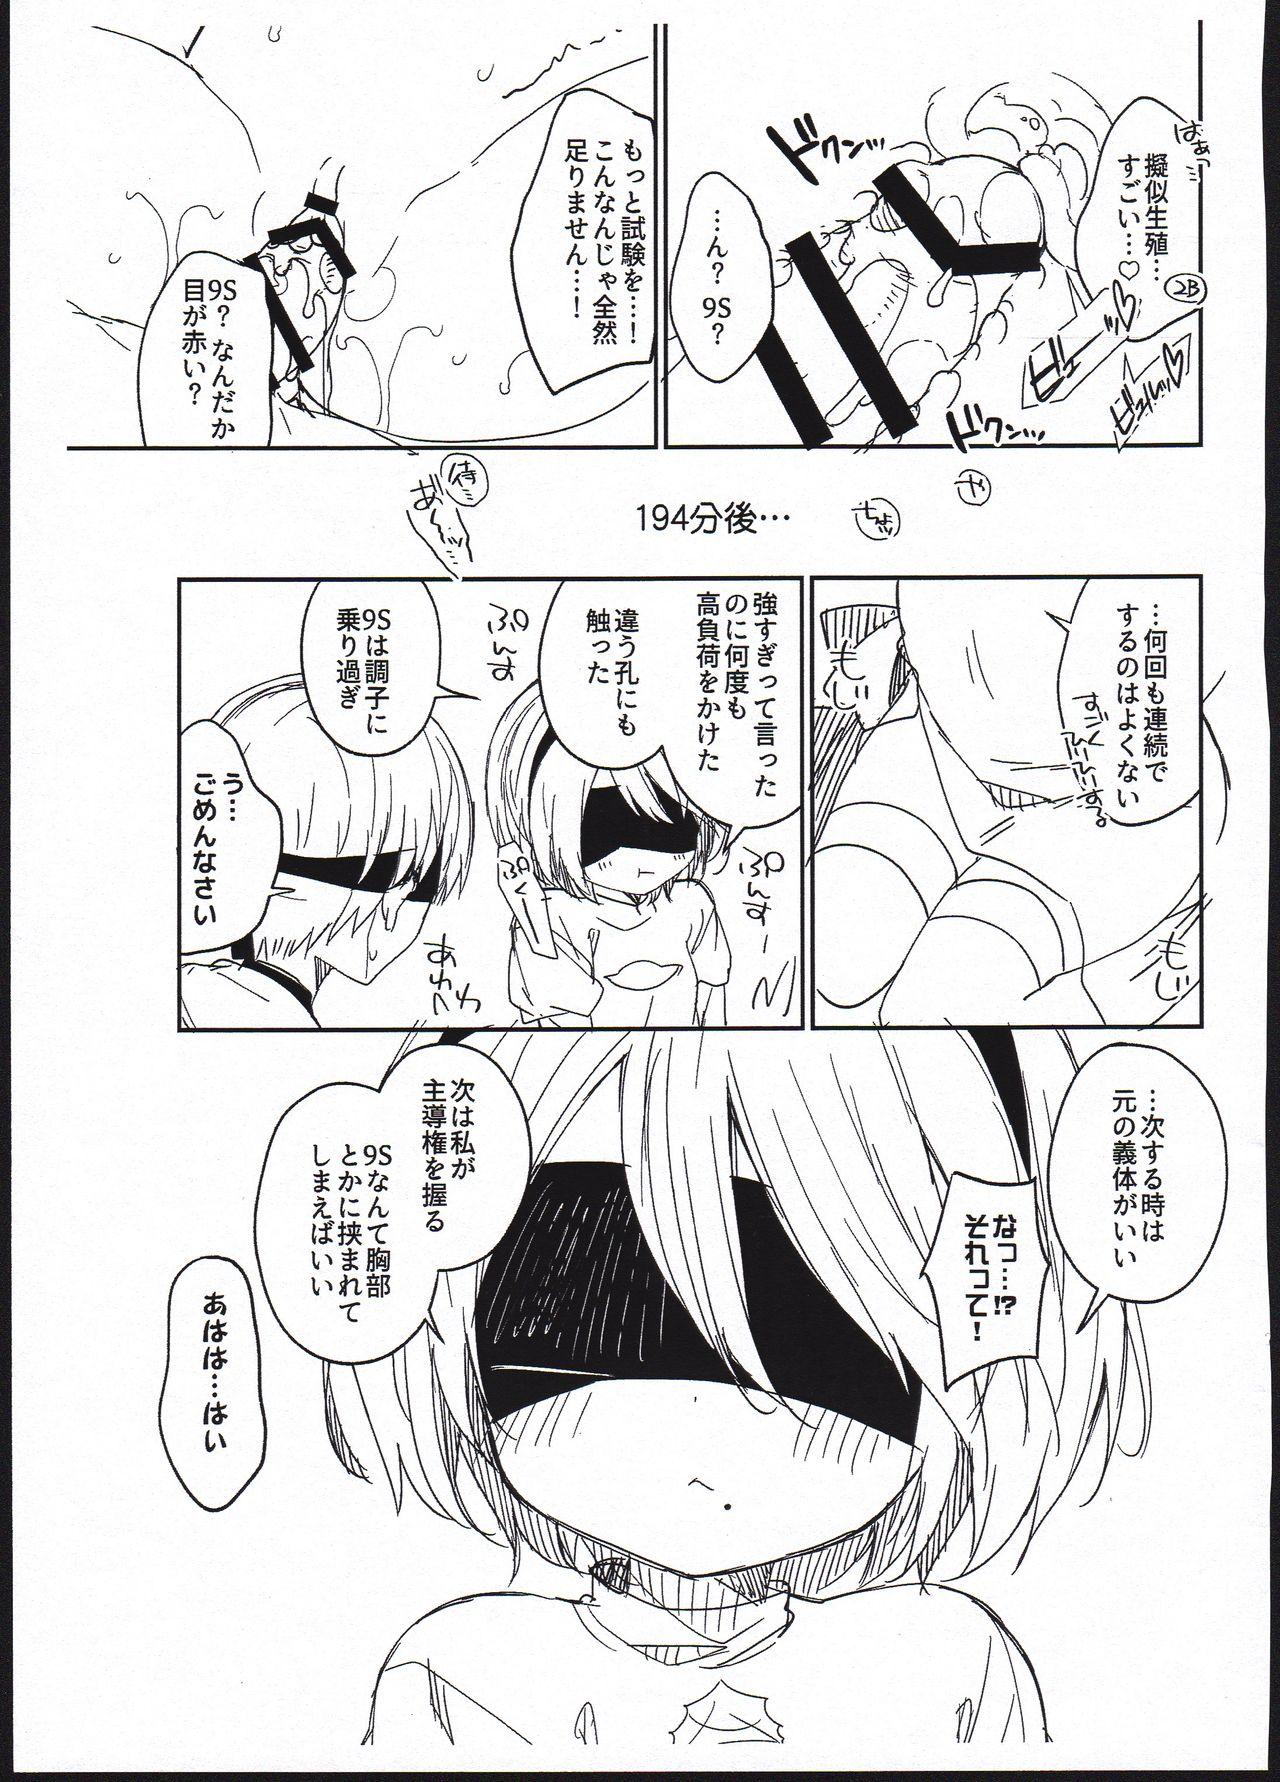 Stepmother YoRHa Kitai 2B no Shoushizaika Gitai Unyou Shiken ni Kansuru Houkoku - Nier automata Boobies - Page 11